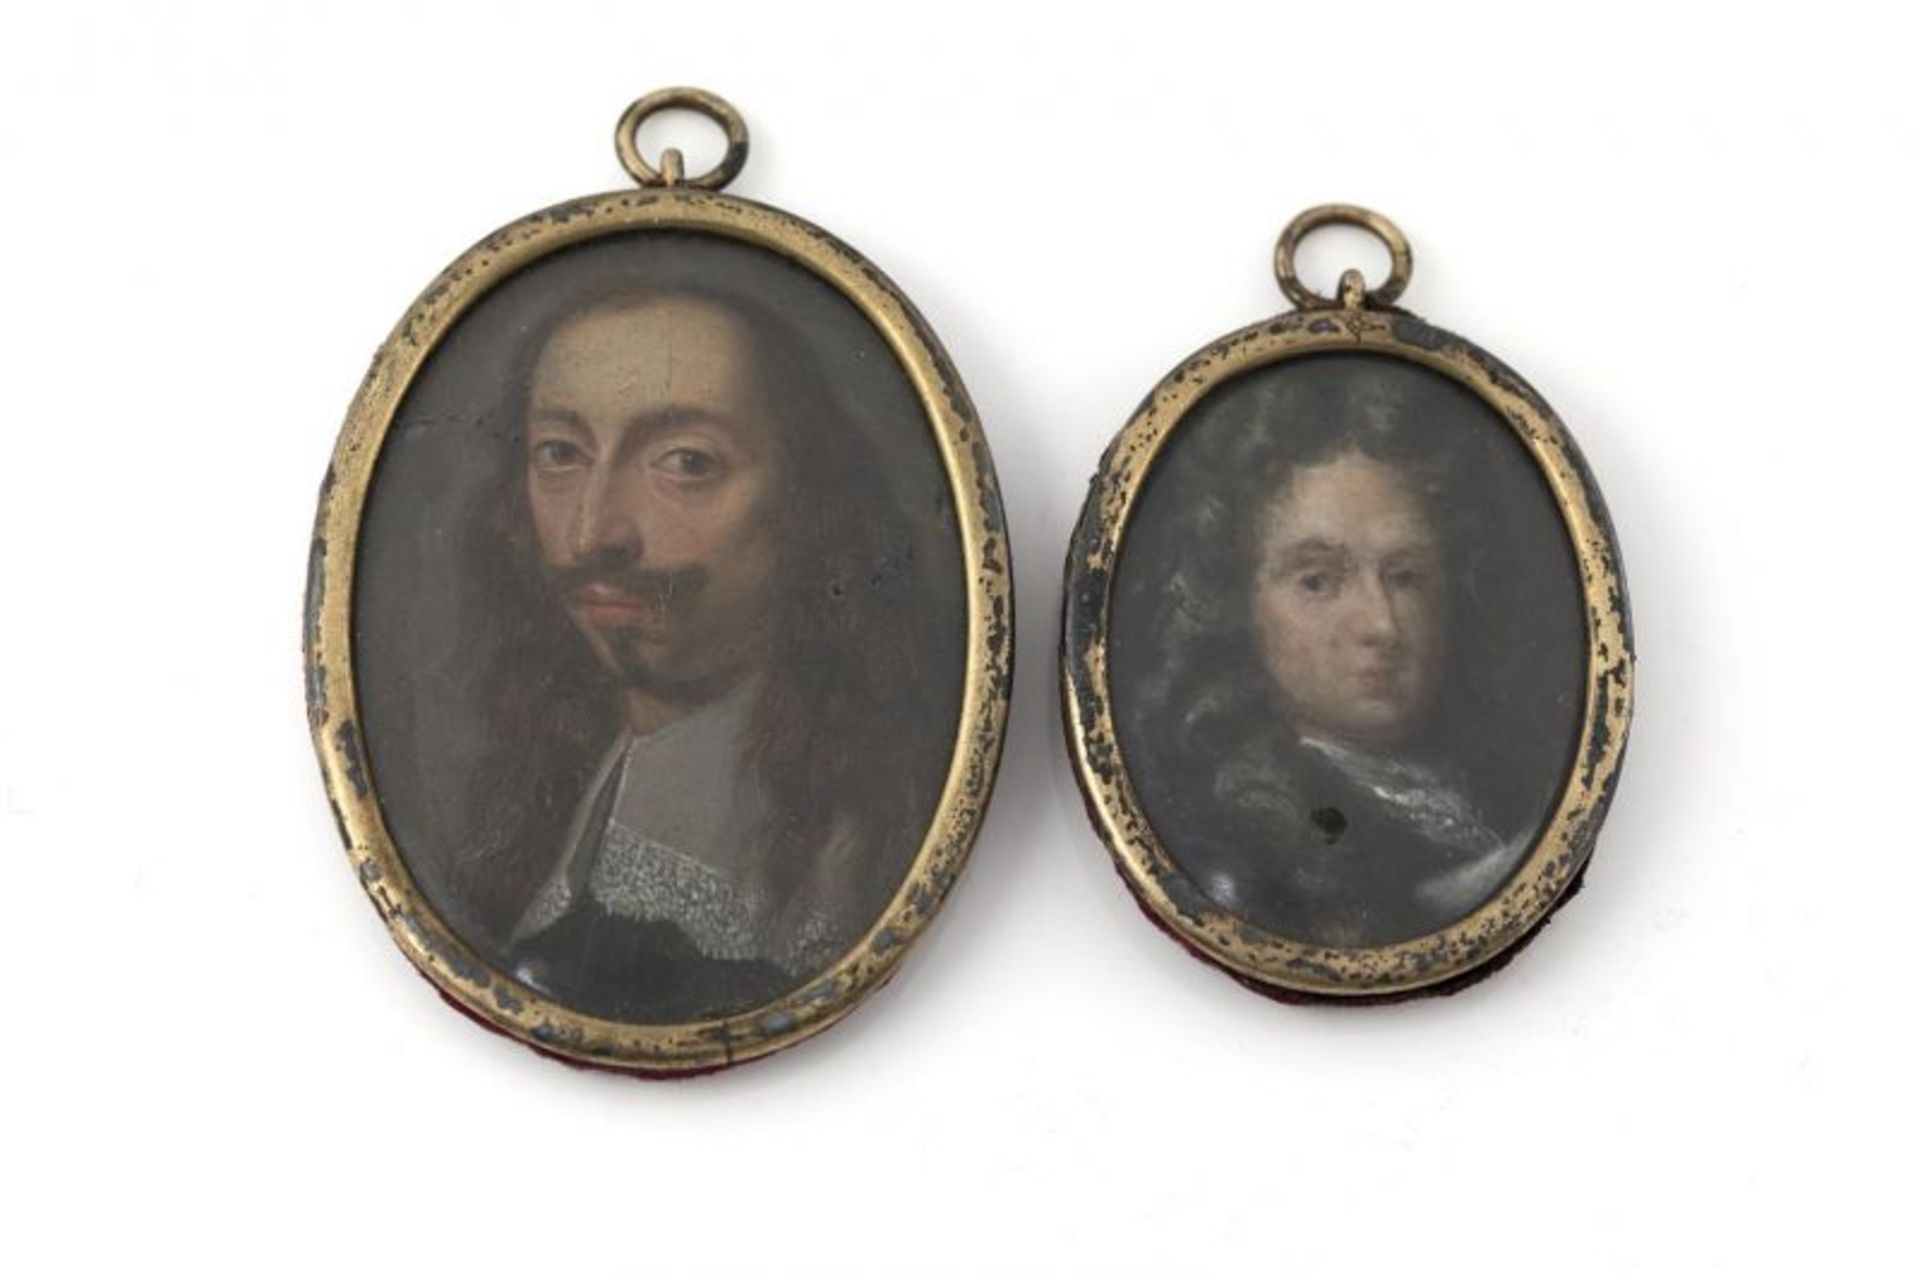 2 ovale portretminiaturen op koper, 5 x 4 en 4 x 3,5 cm., voorstelling van 2 heren, mogelijk